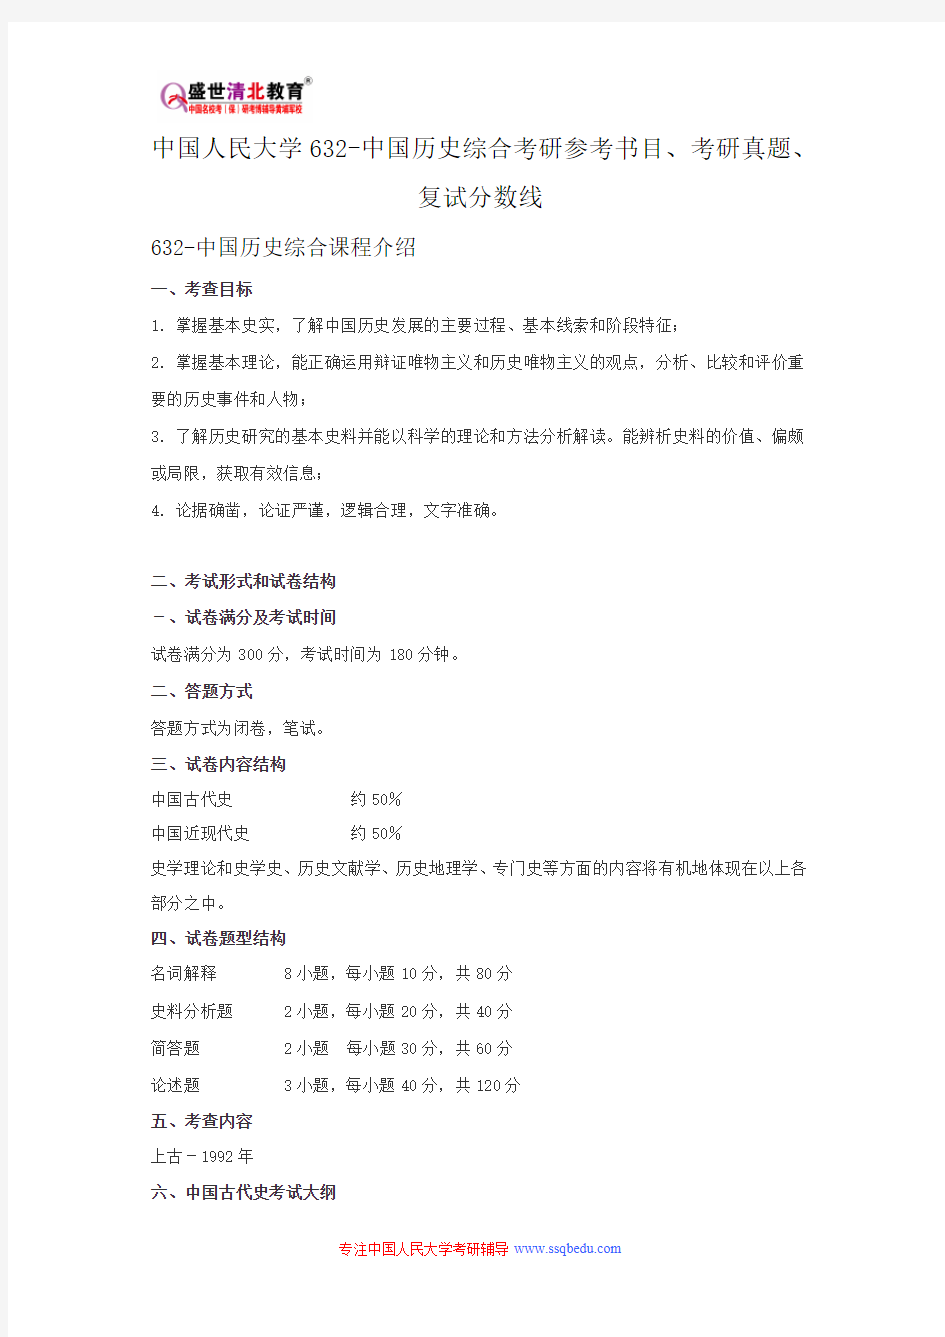 中国人民大学632-中国历史综合考研参考书目、考研真题、复试分数线